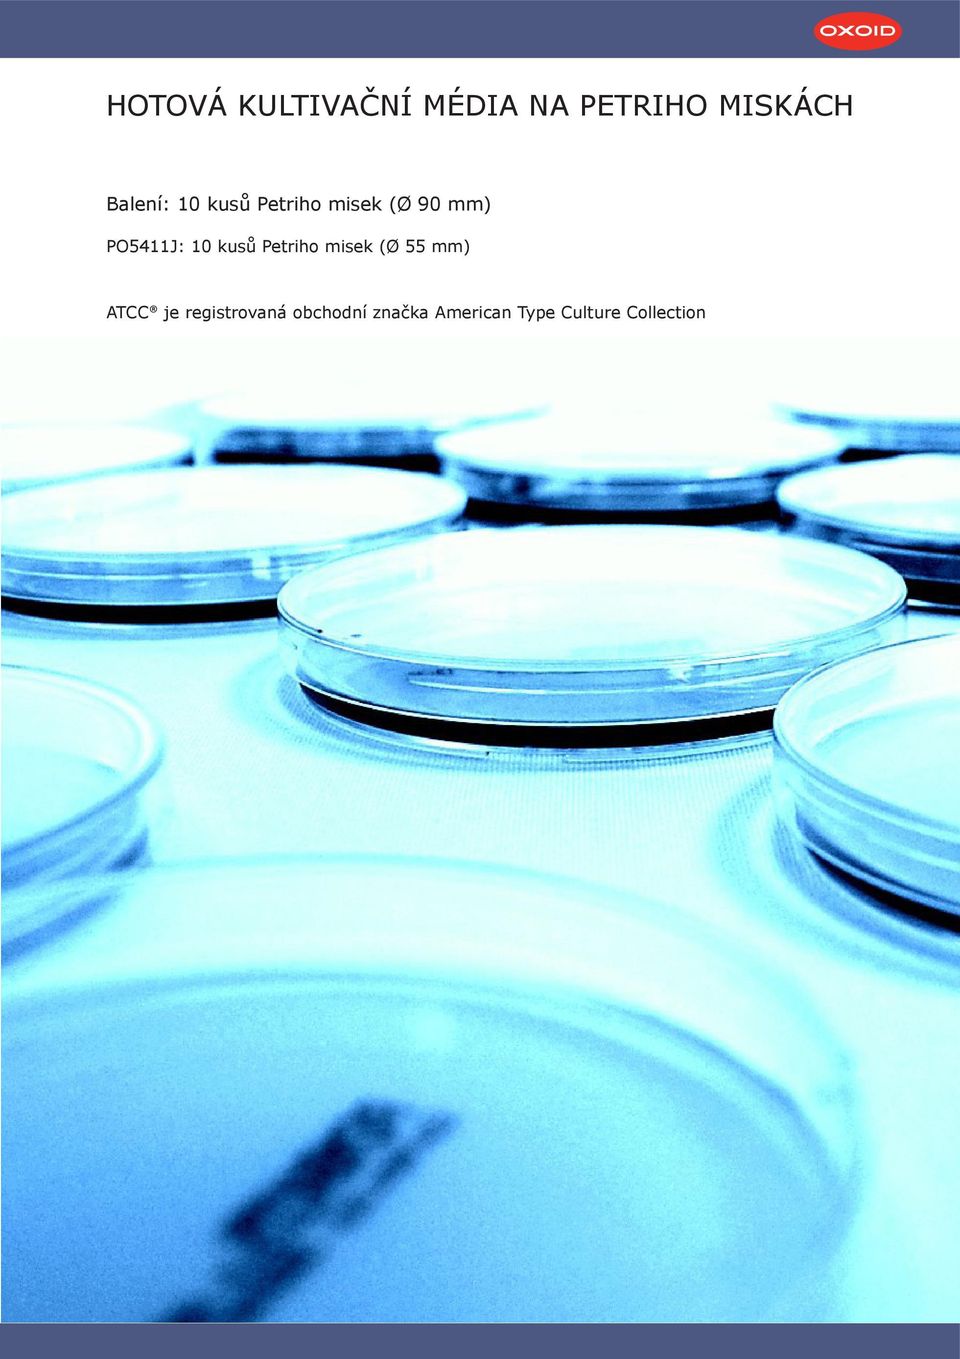 10 kusů Petriho misek (Ø 55 mm) ATCC je